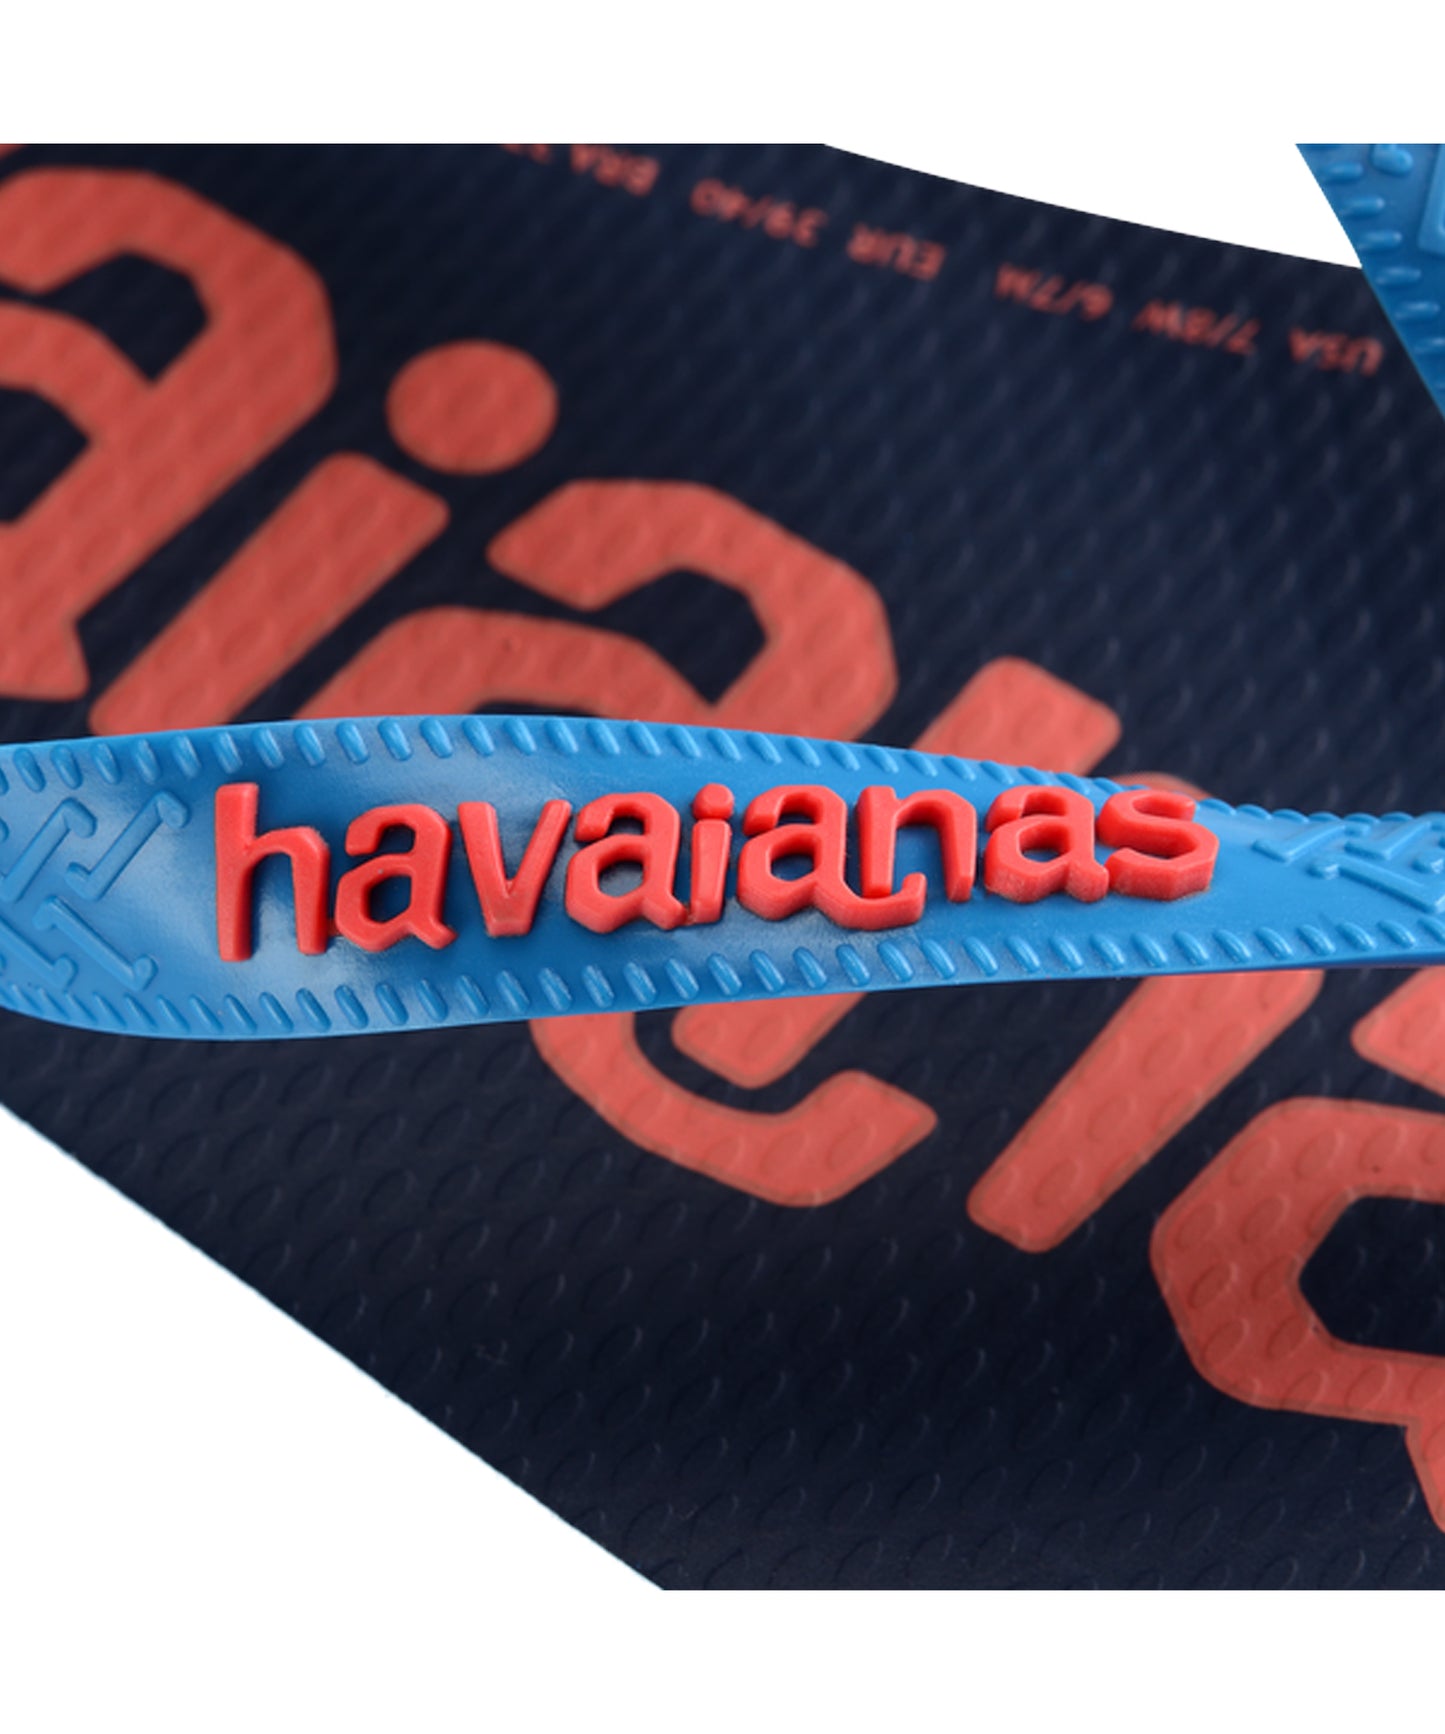 havaianas-chanclas-top-logo manía-color-turquesa-Cómodas,-sólidas-ligeras-antideslizantes-resistente- a- calor-y-al-agua.